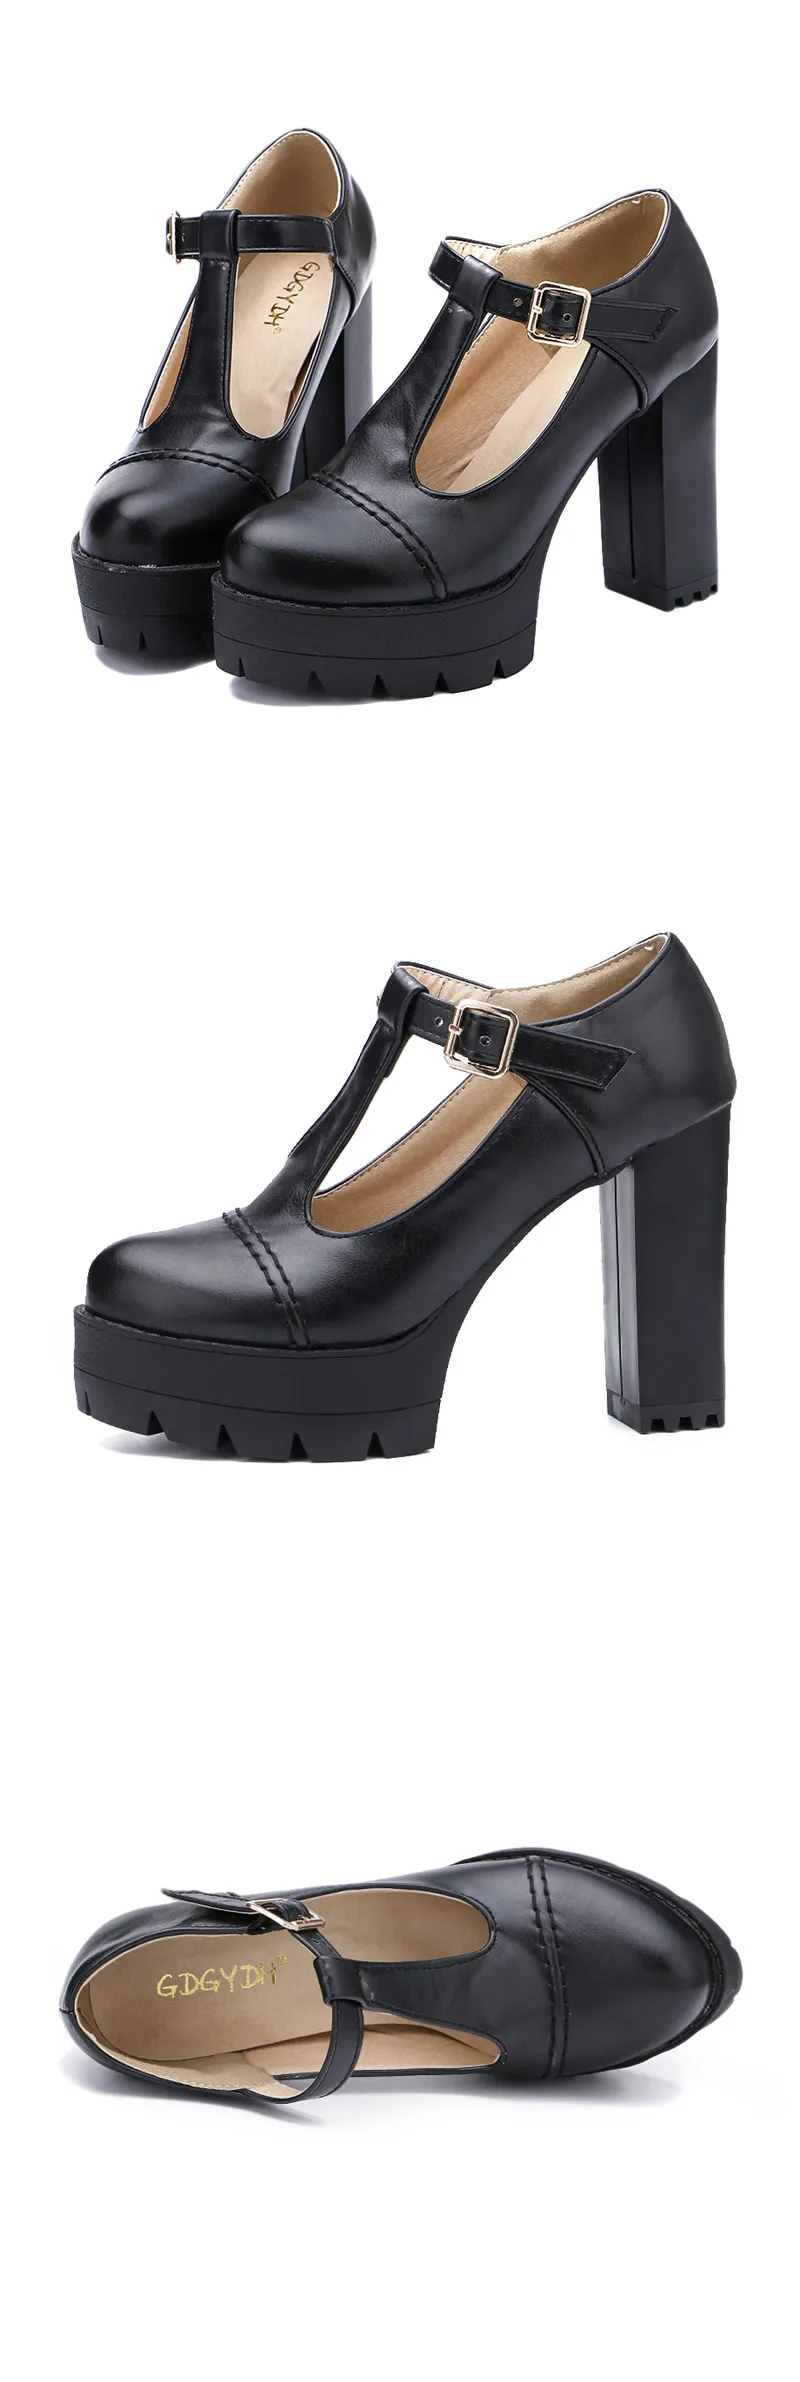 Gdgydh/модные женские туфли-лодочки женские тонкие туфли с Т-образной пряжкой и круглым носком женские туфли на платформе и толстом каблуке русский размер 43